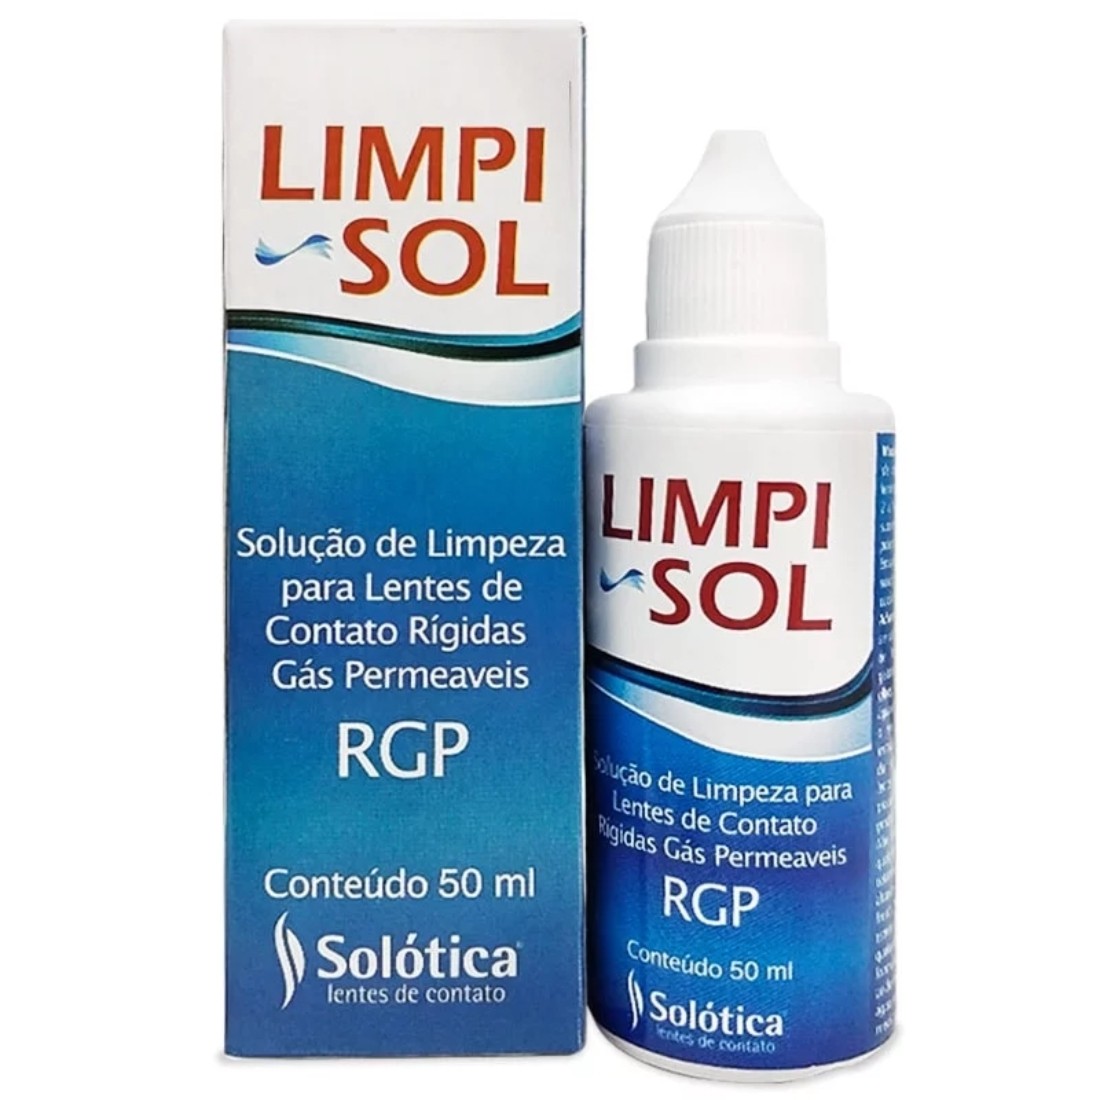 Limpi_Sol_-_Solucao_de_limpeza_para_lentes_de_contato_Rigidas_RGP_1.jpg